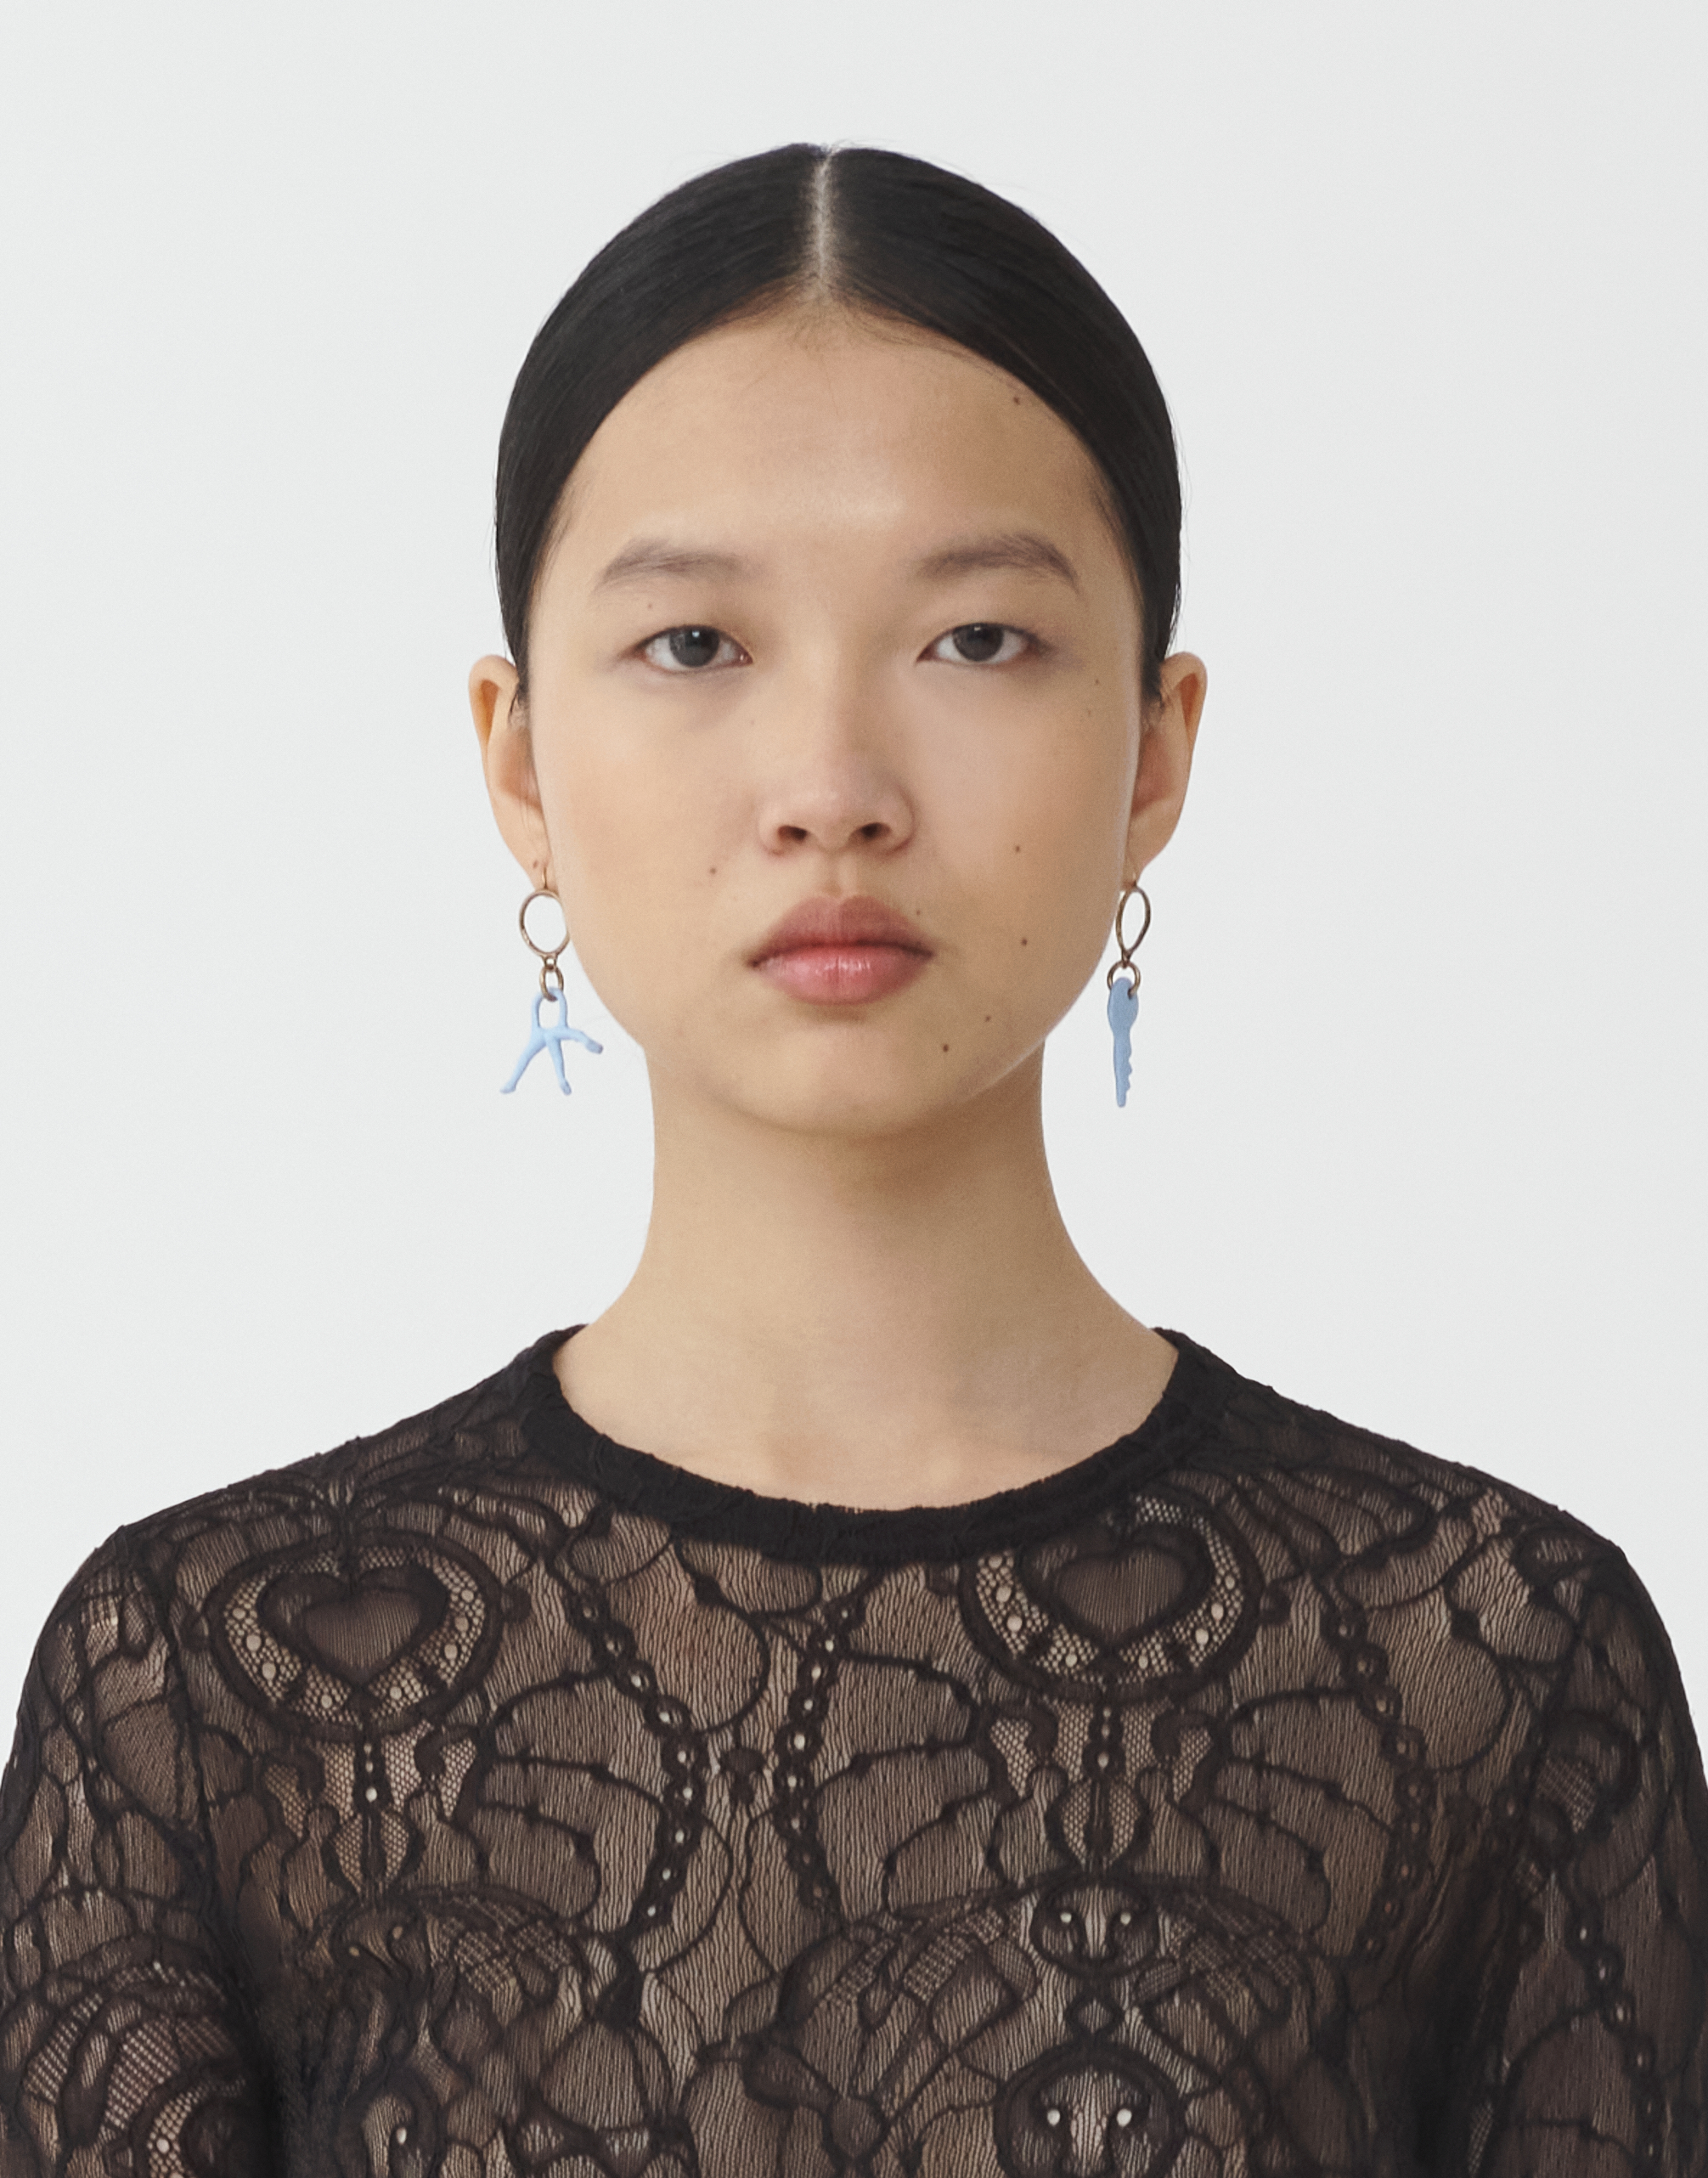 Shop Fabiana Filippi Eco Brass Pendant Earrings In Light Blue